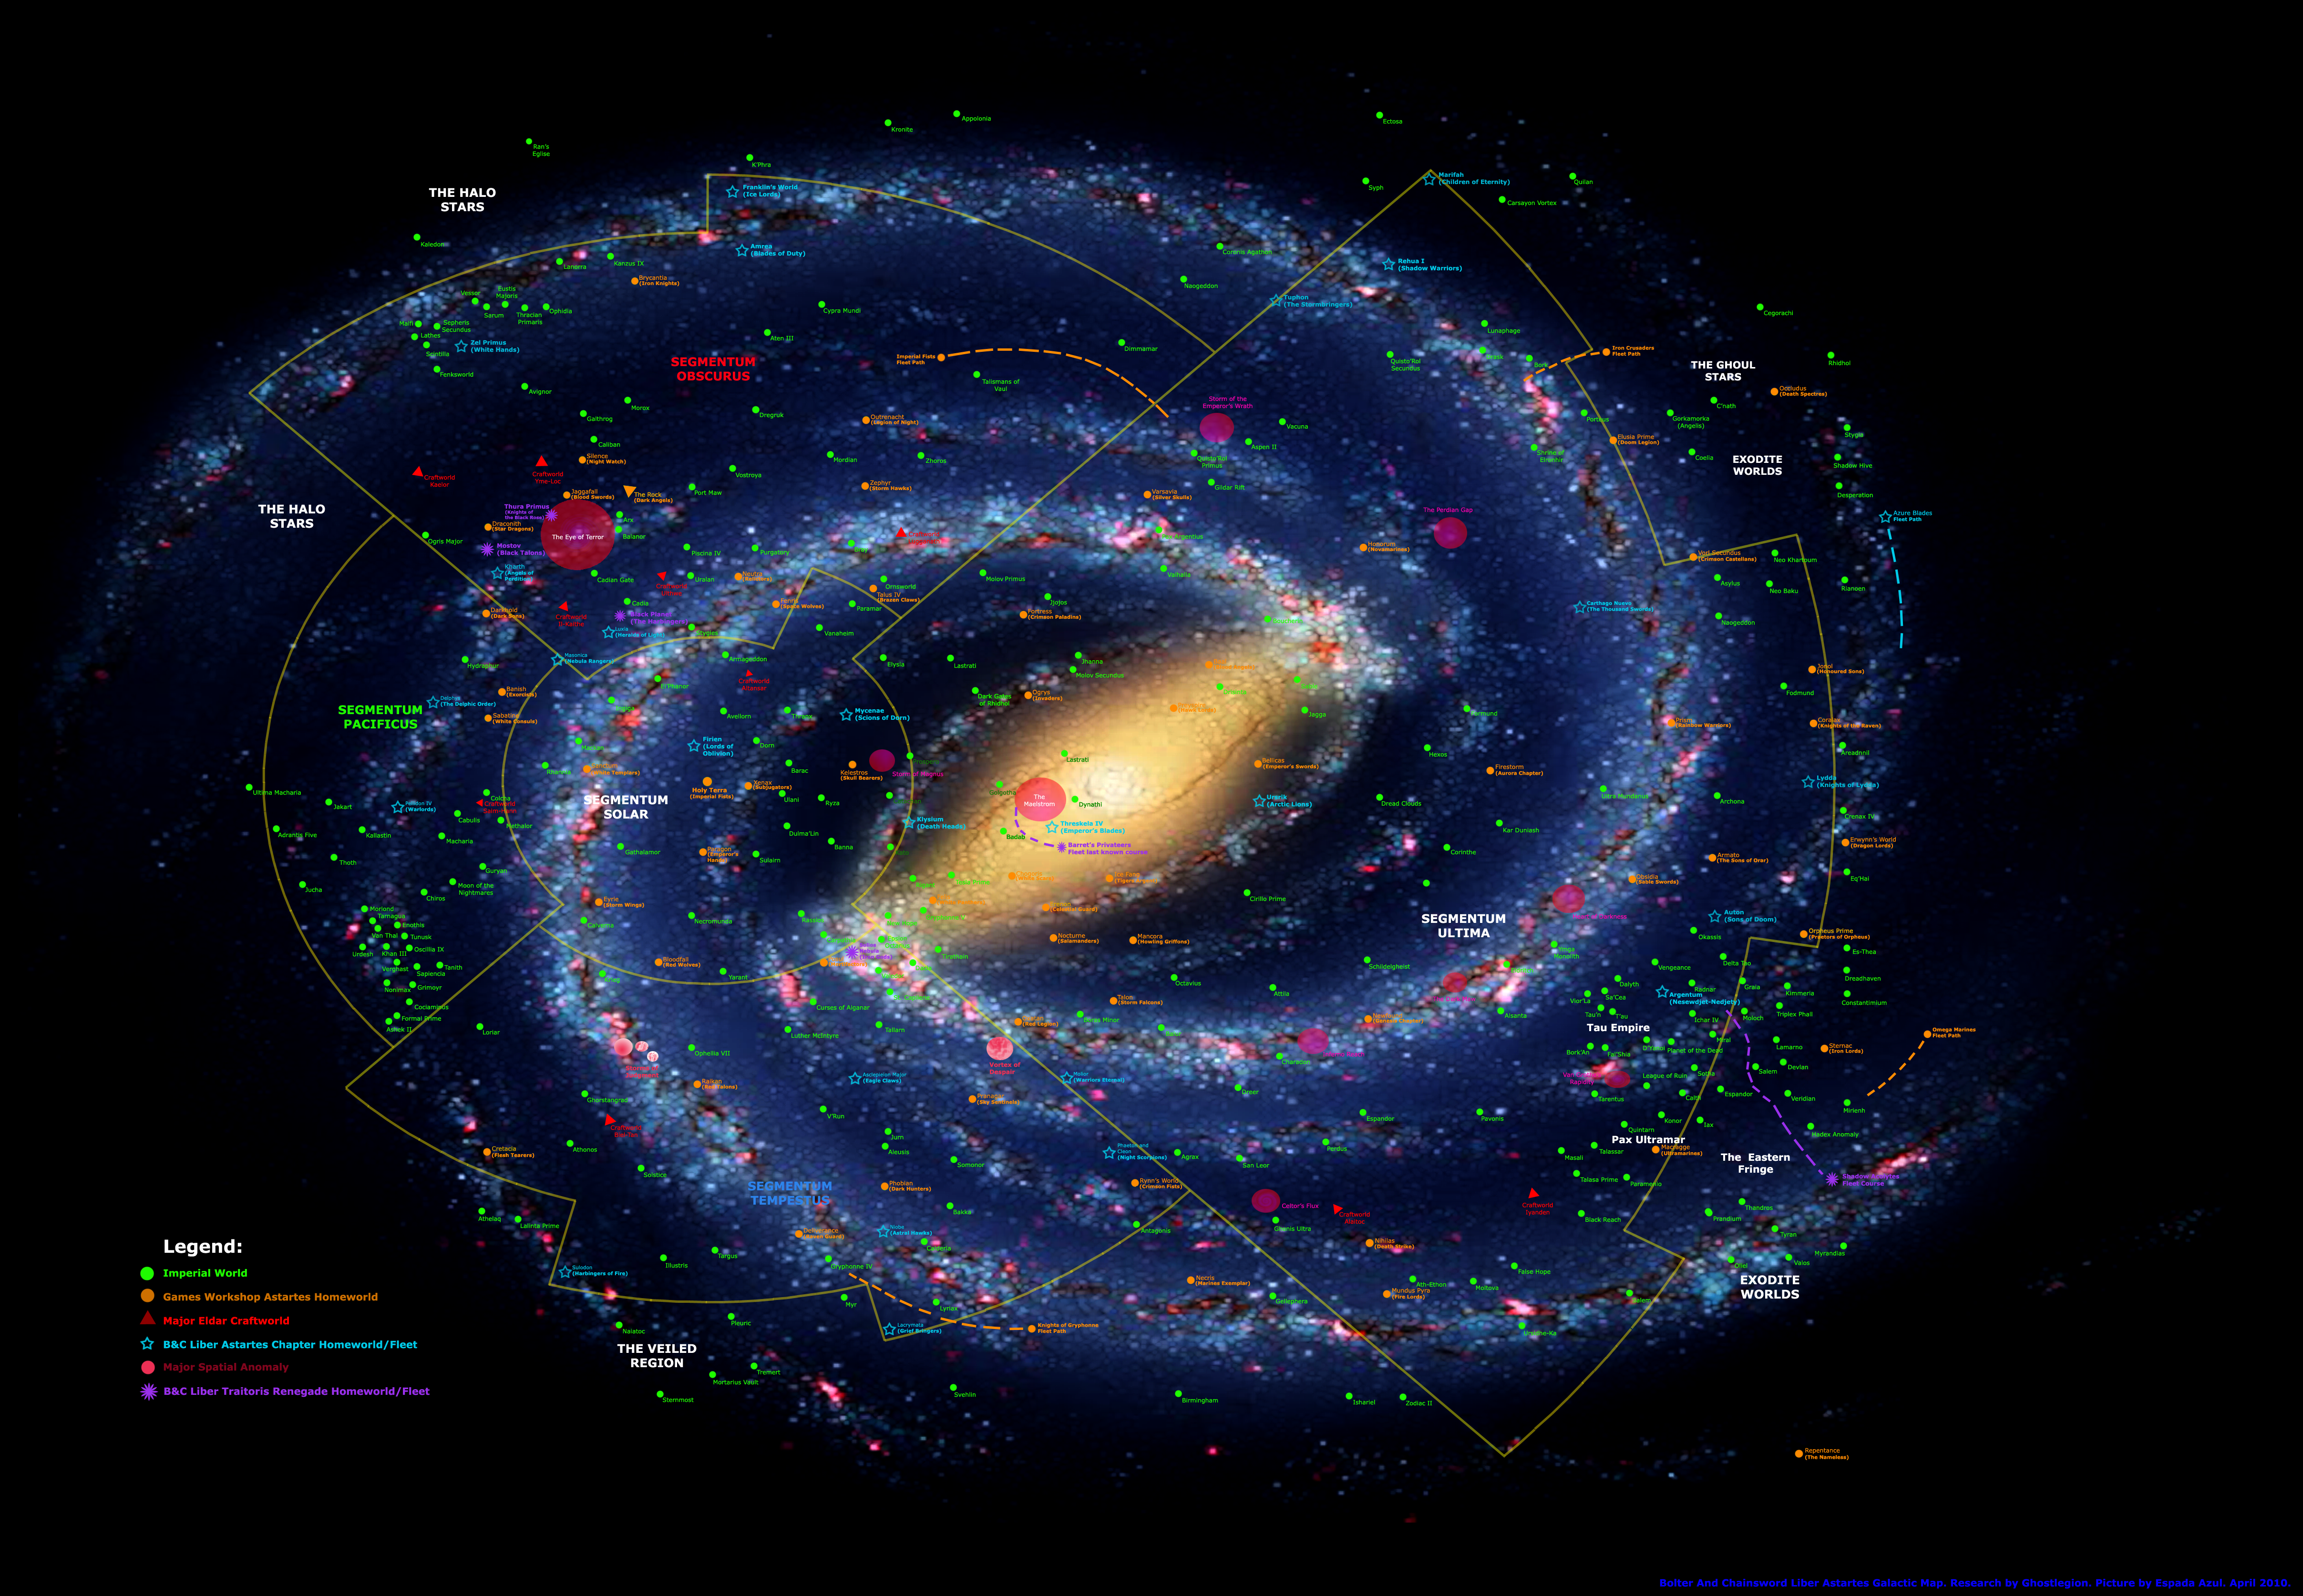 Галактика (млечный путь) - скопление миллиарда звезд в спирилле